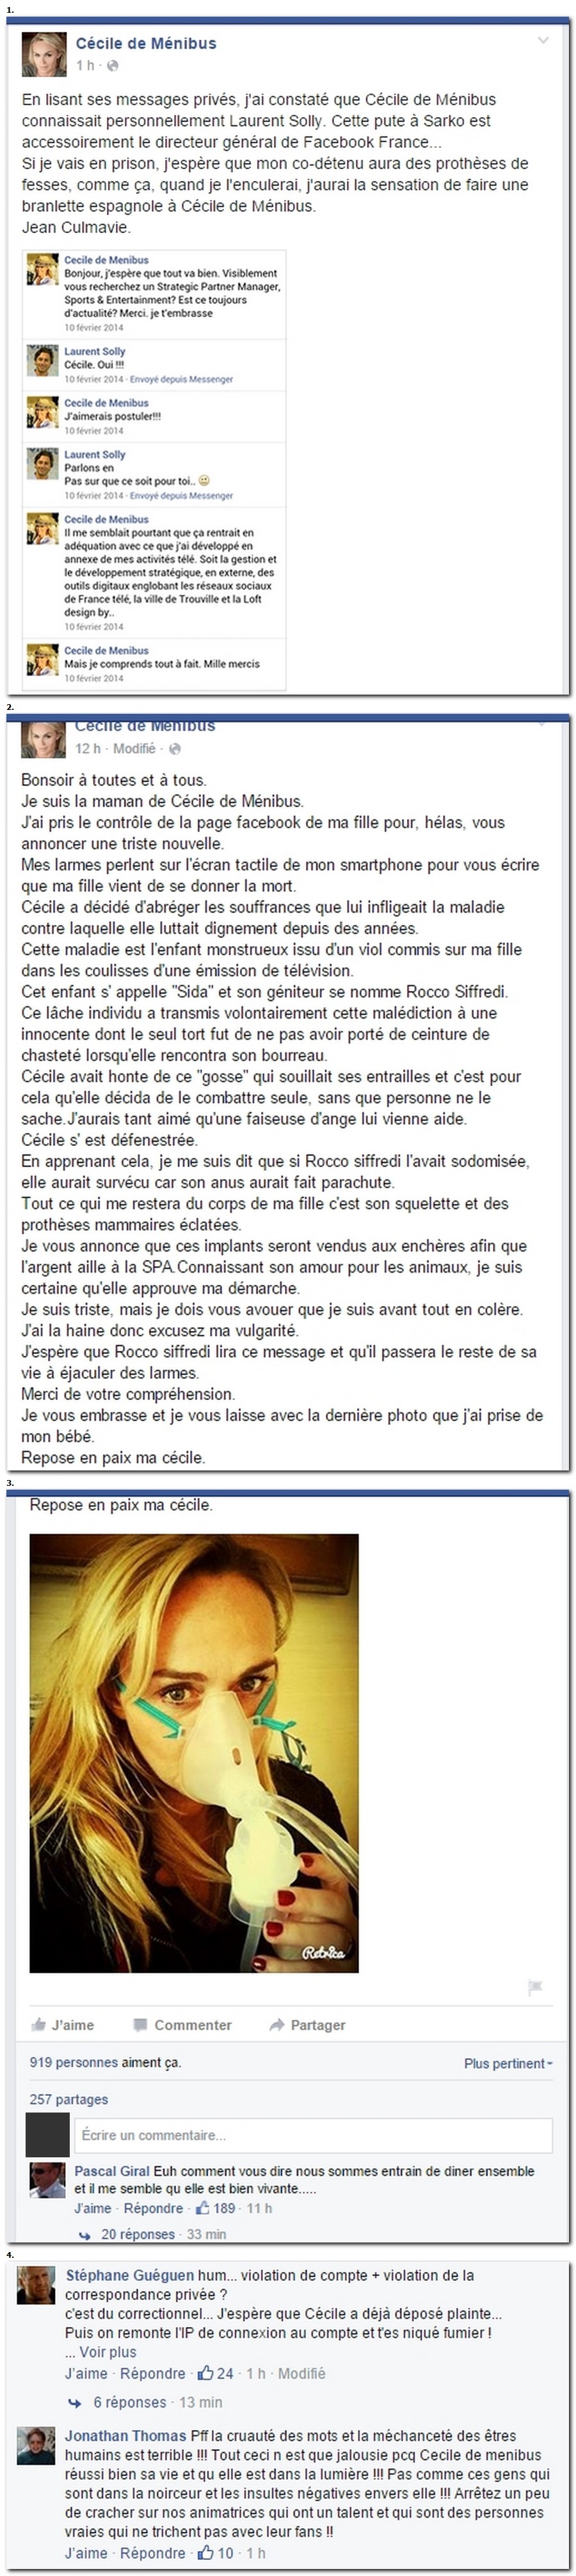 Cécile de Ménibus hackée sur Facebook